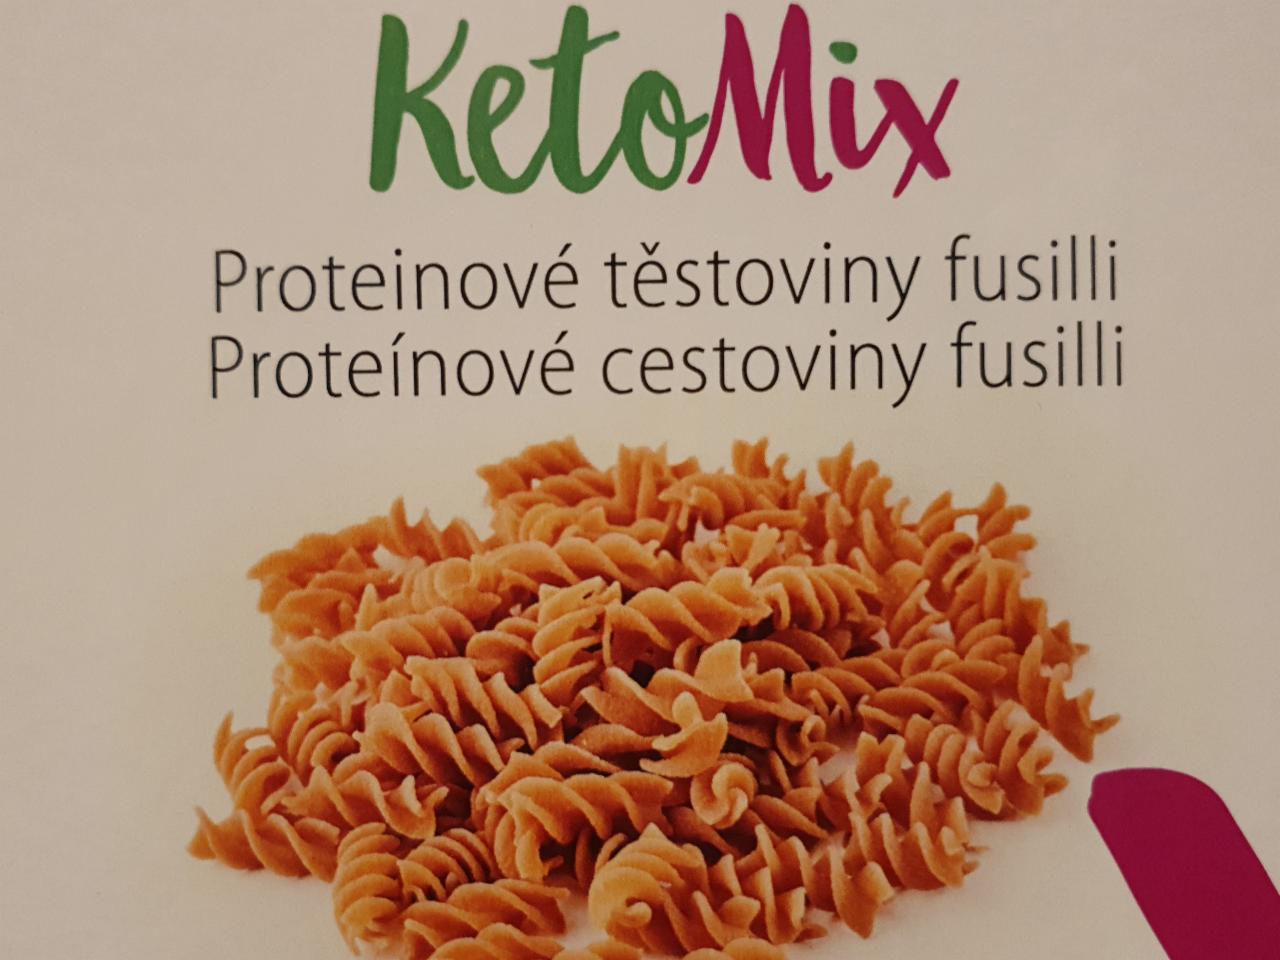 Fotografie - proteinové těstoviny fusilli KetoMix